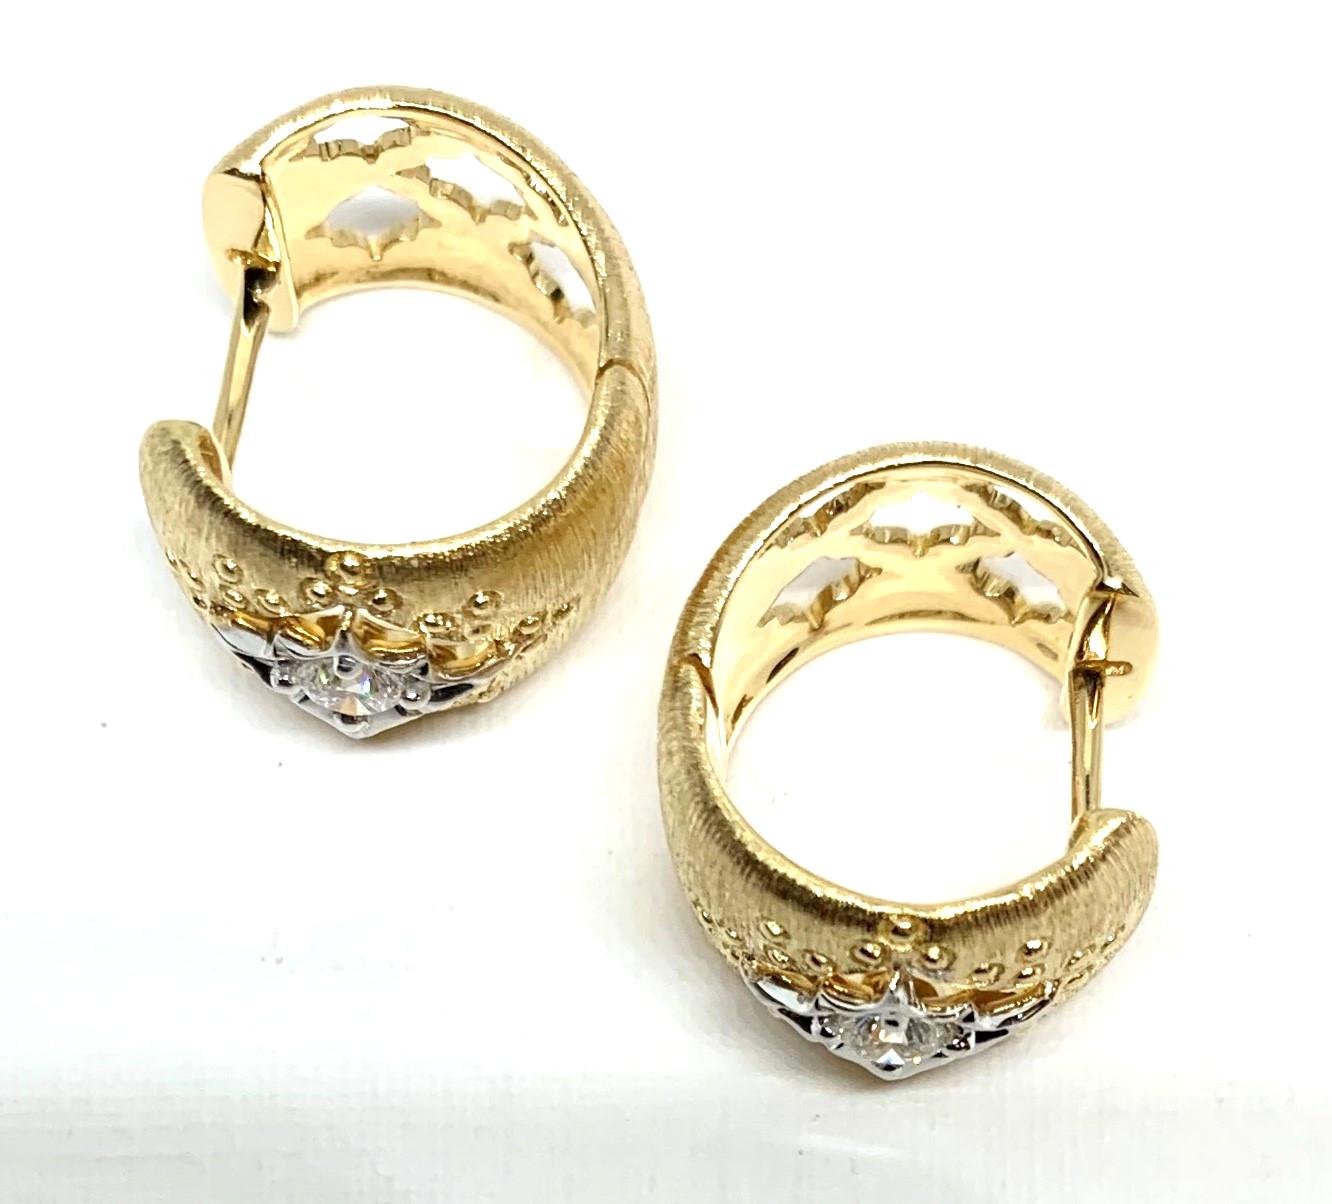 Ces anneaux d'inspiration Florentine présentent deux diamants ronds de taille brillante sertis dans des boucles d'oreilles en or jaune et blanc 18 carats avec dos à charnière. Avec un joli travail d'or ouvert et des détails raffinés et texturés, ces